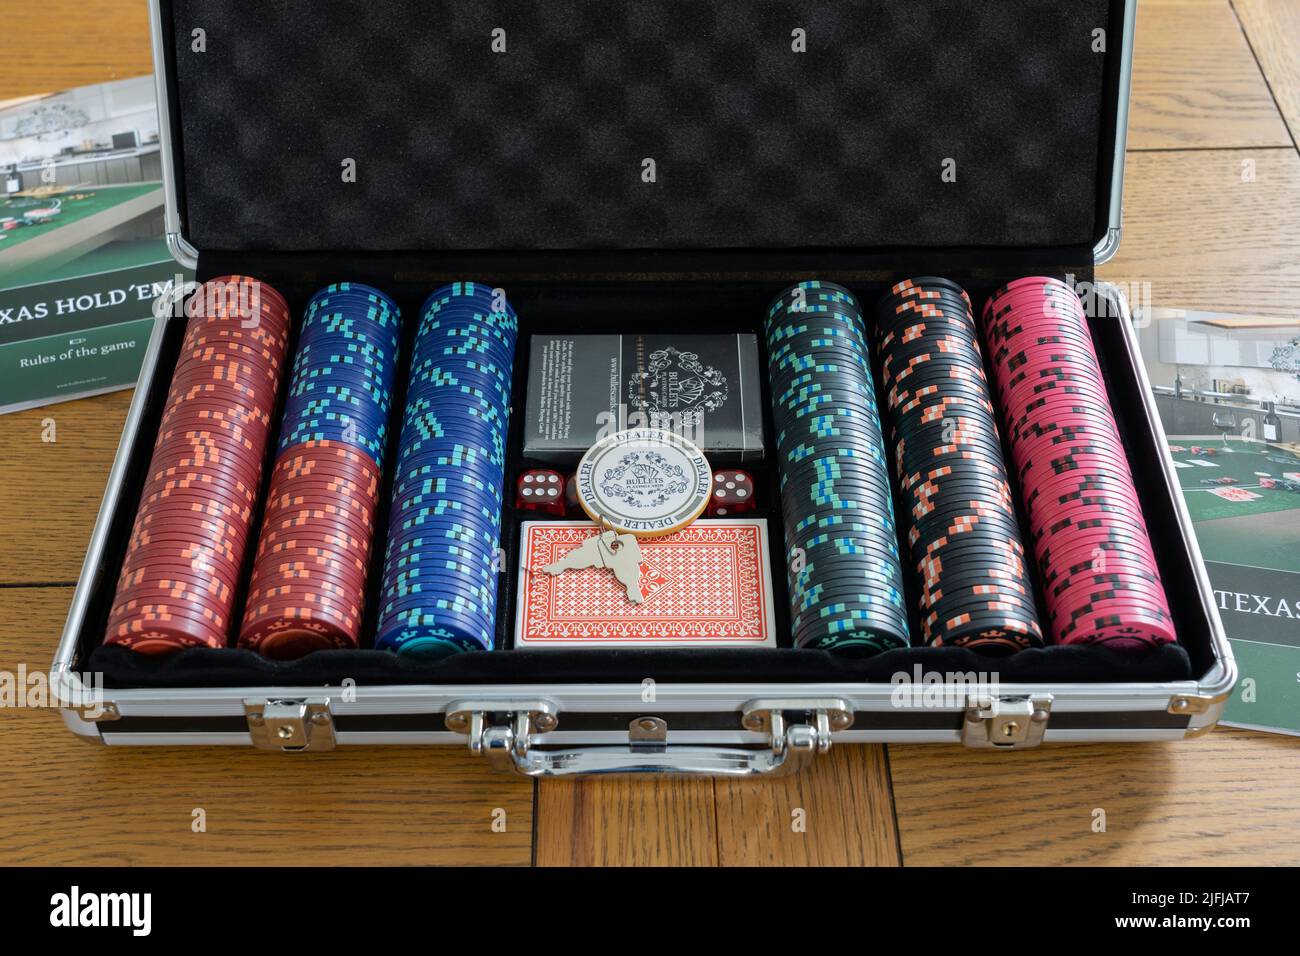 Un estuche metálico de póquer con fichas de apuestas, paquetes de cartas y una ficha de distribuidor para jugar al Texas Hold 'em. Tema - póquer, juegos de azar en casa Foto de stock